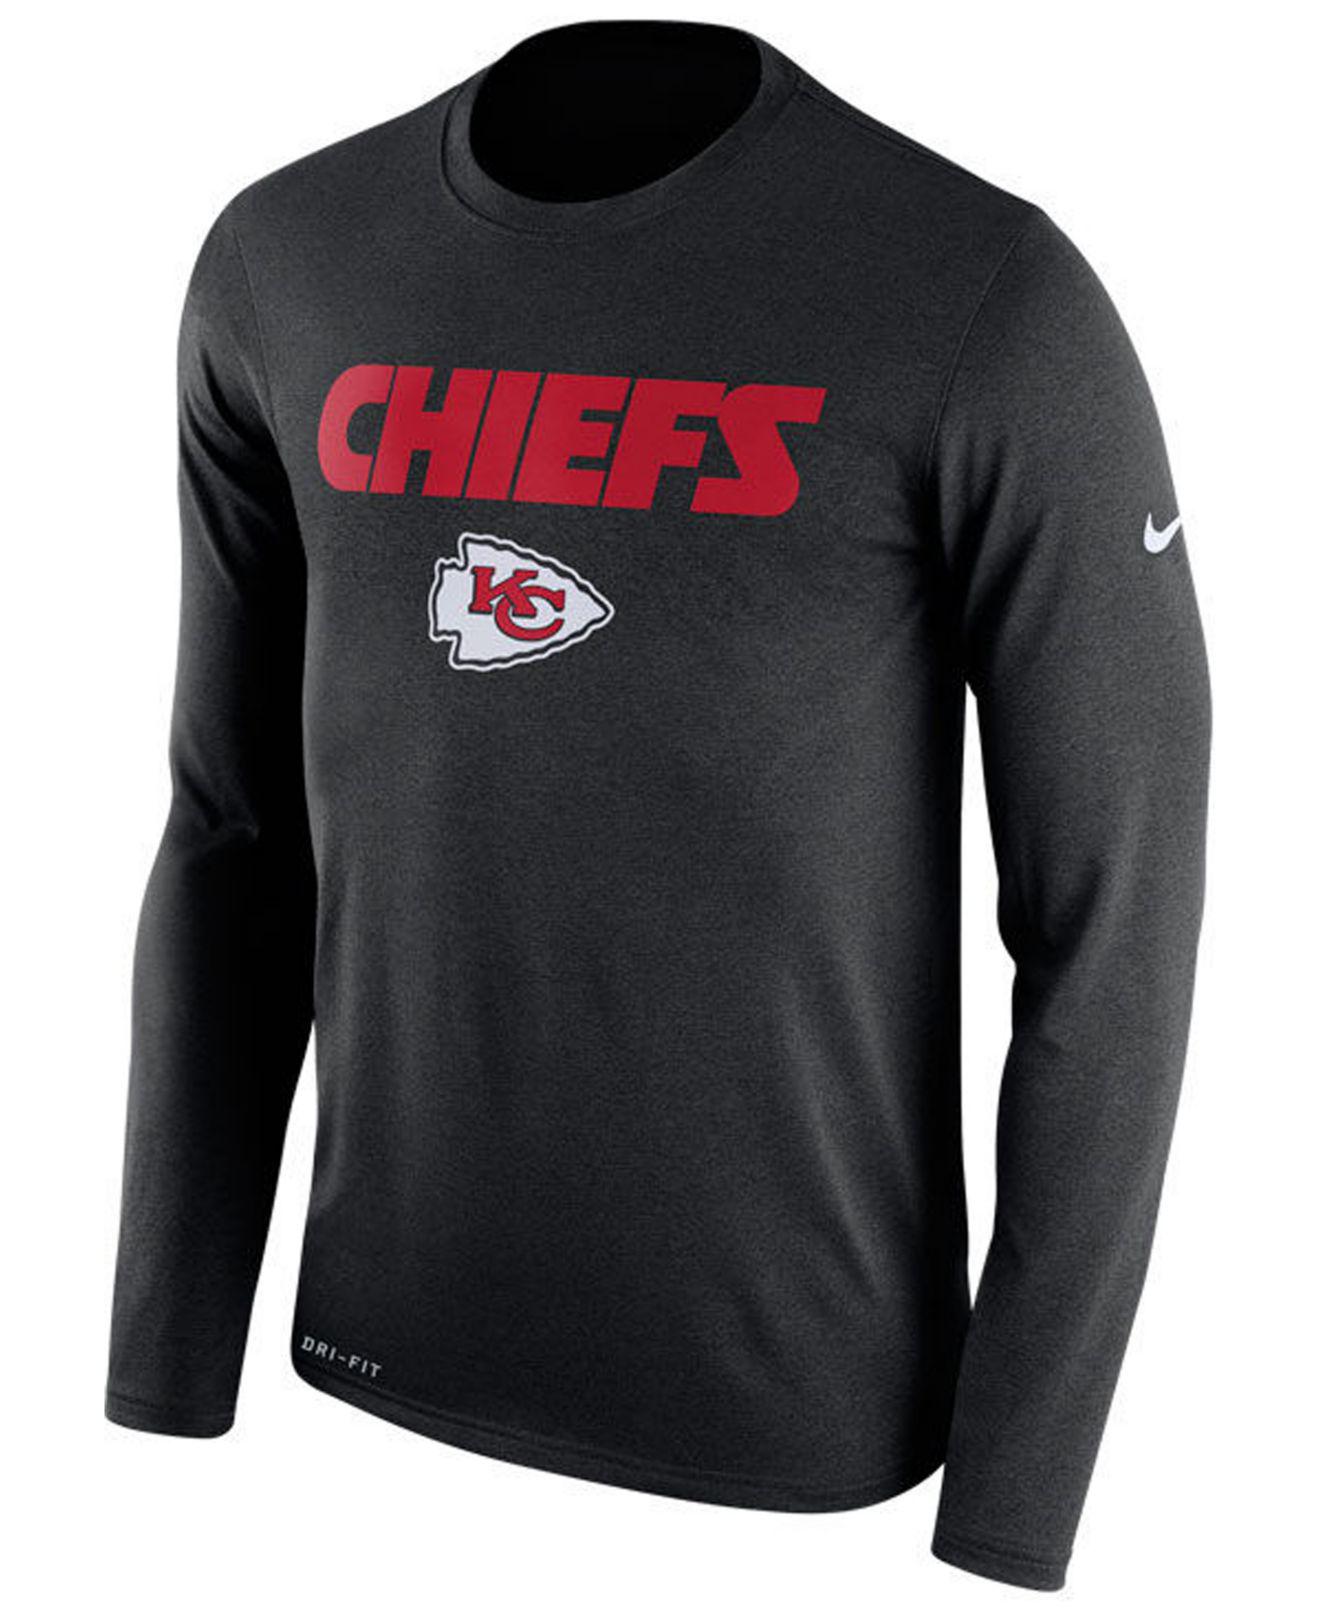 chiefs long sleeve t shirt